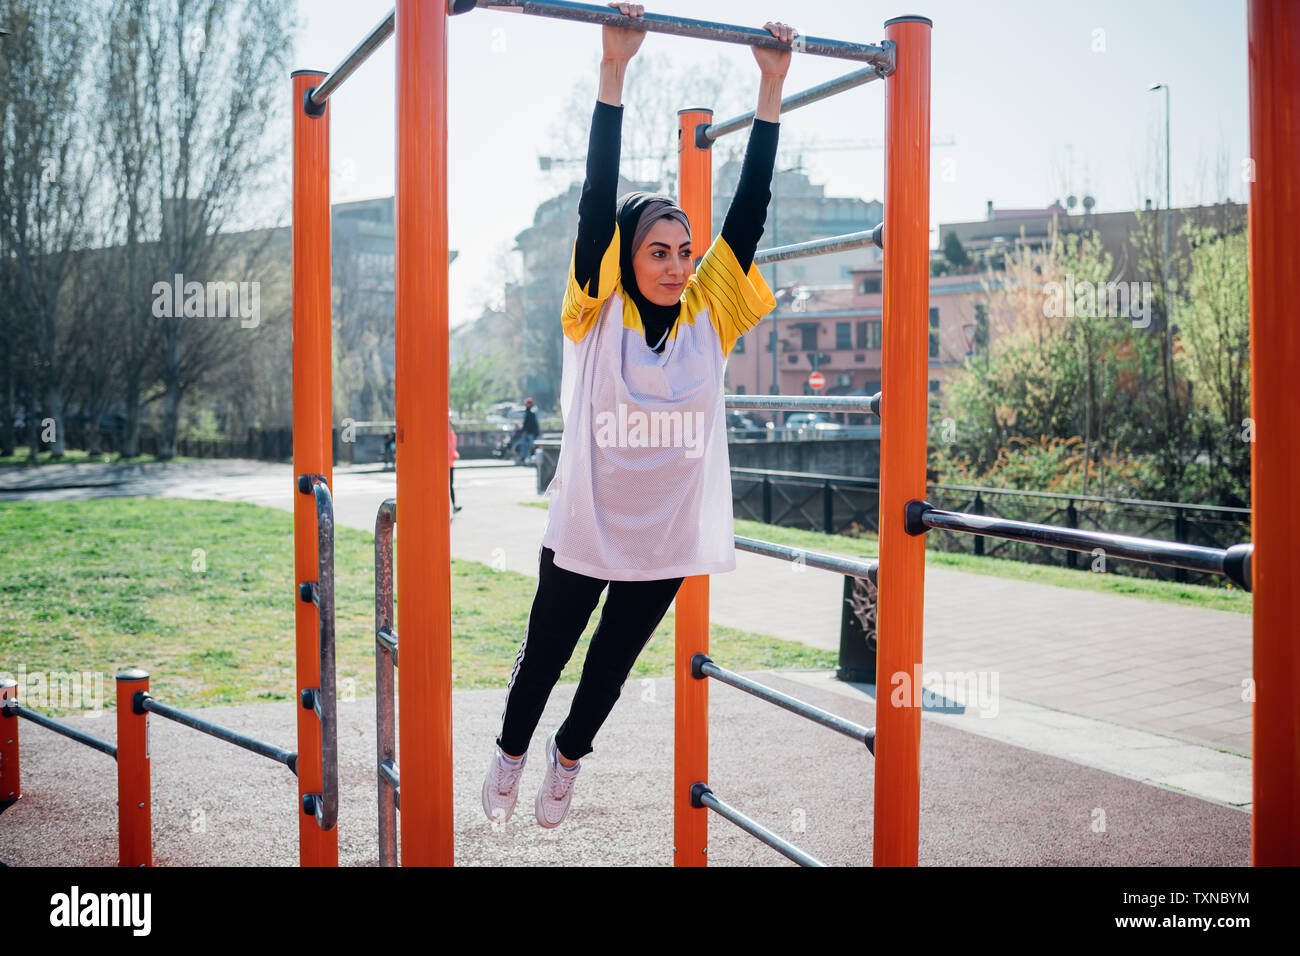 La classe de gymnastique suédoise au sport en plein air, jeune femme se balançant d'équipement d'exercice Banque D'Images